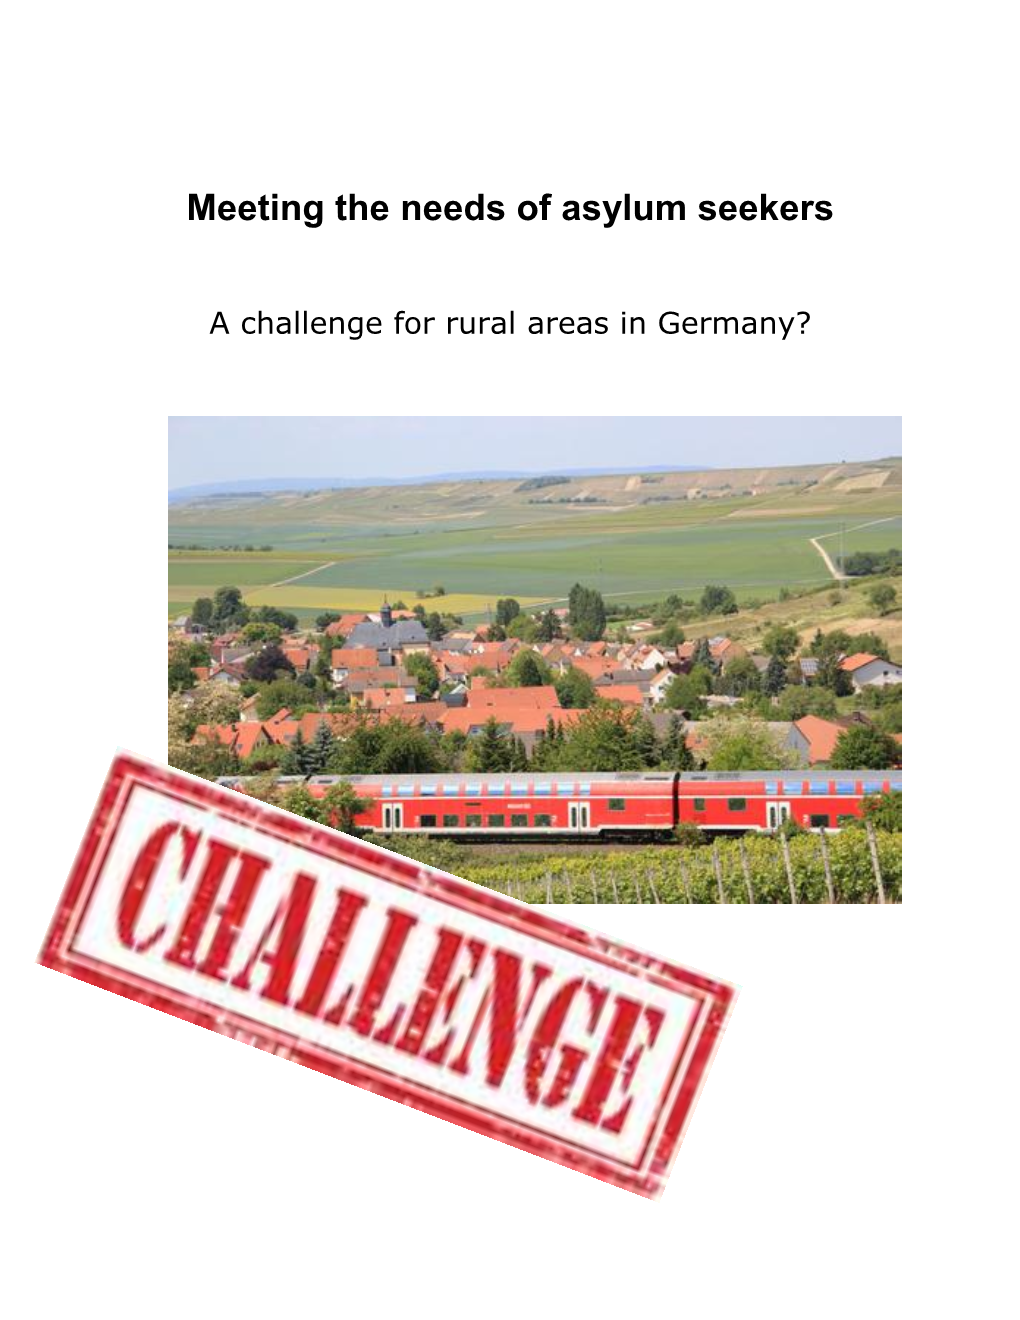 Meeting the Needs of Asylum Seekers